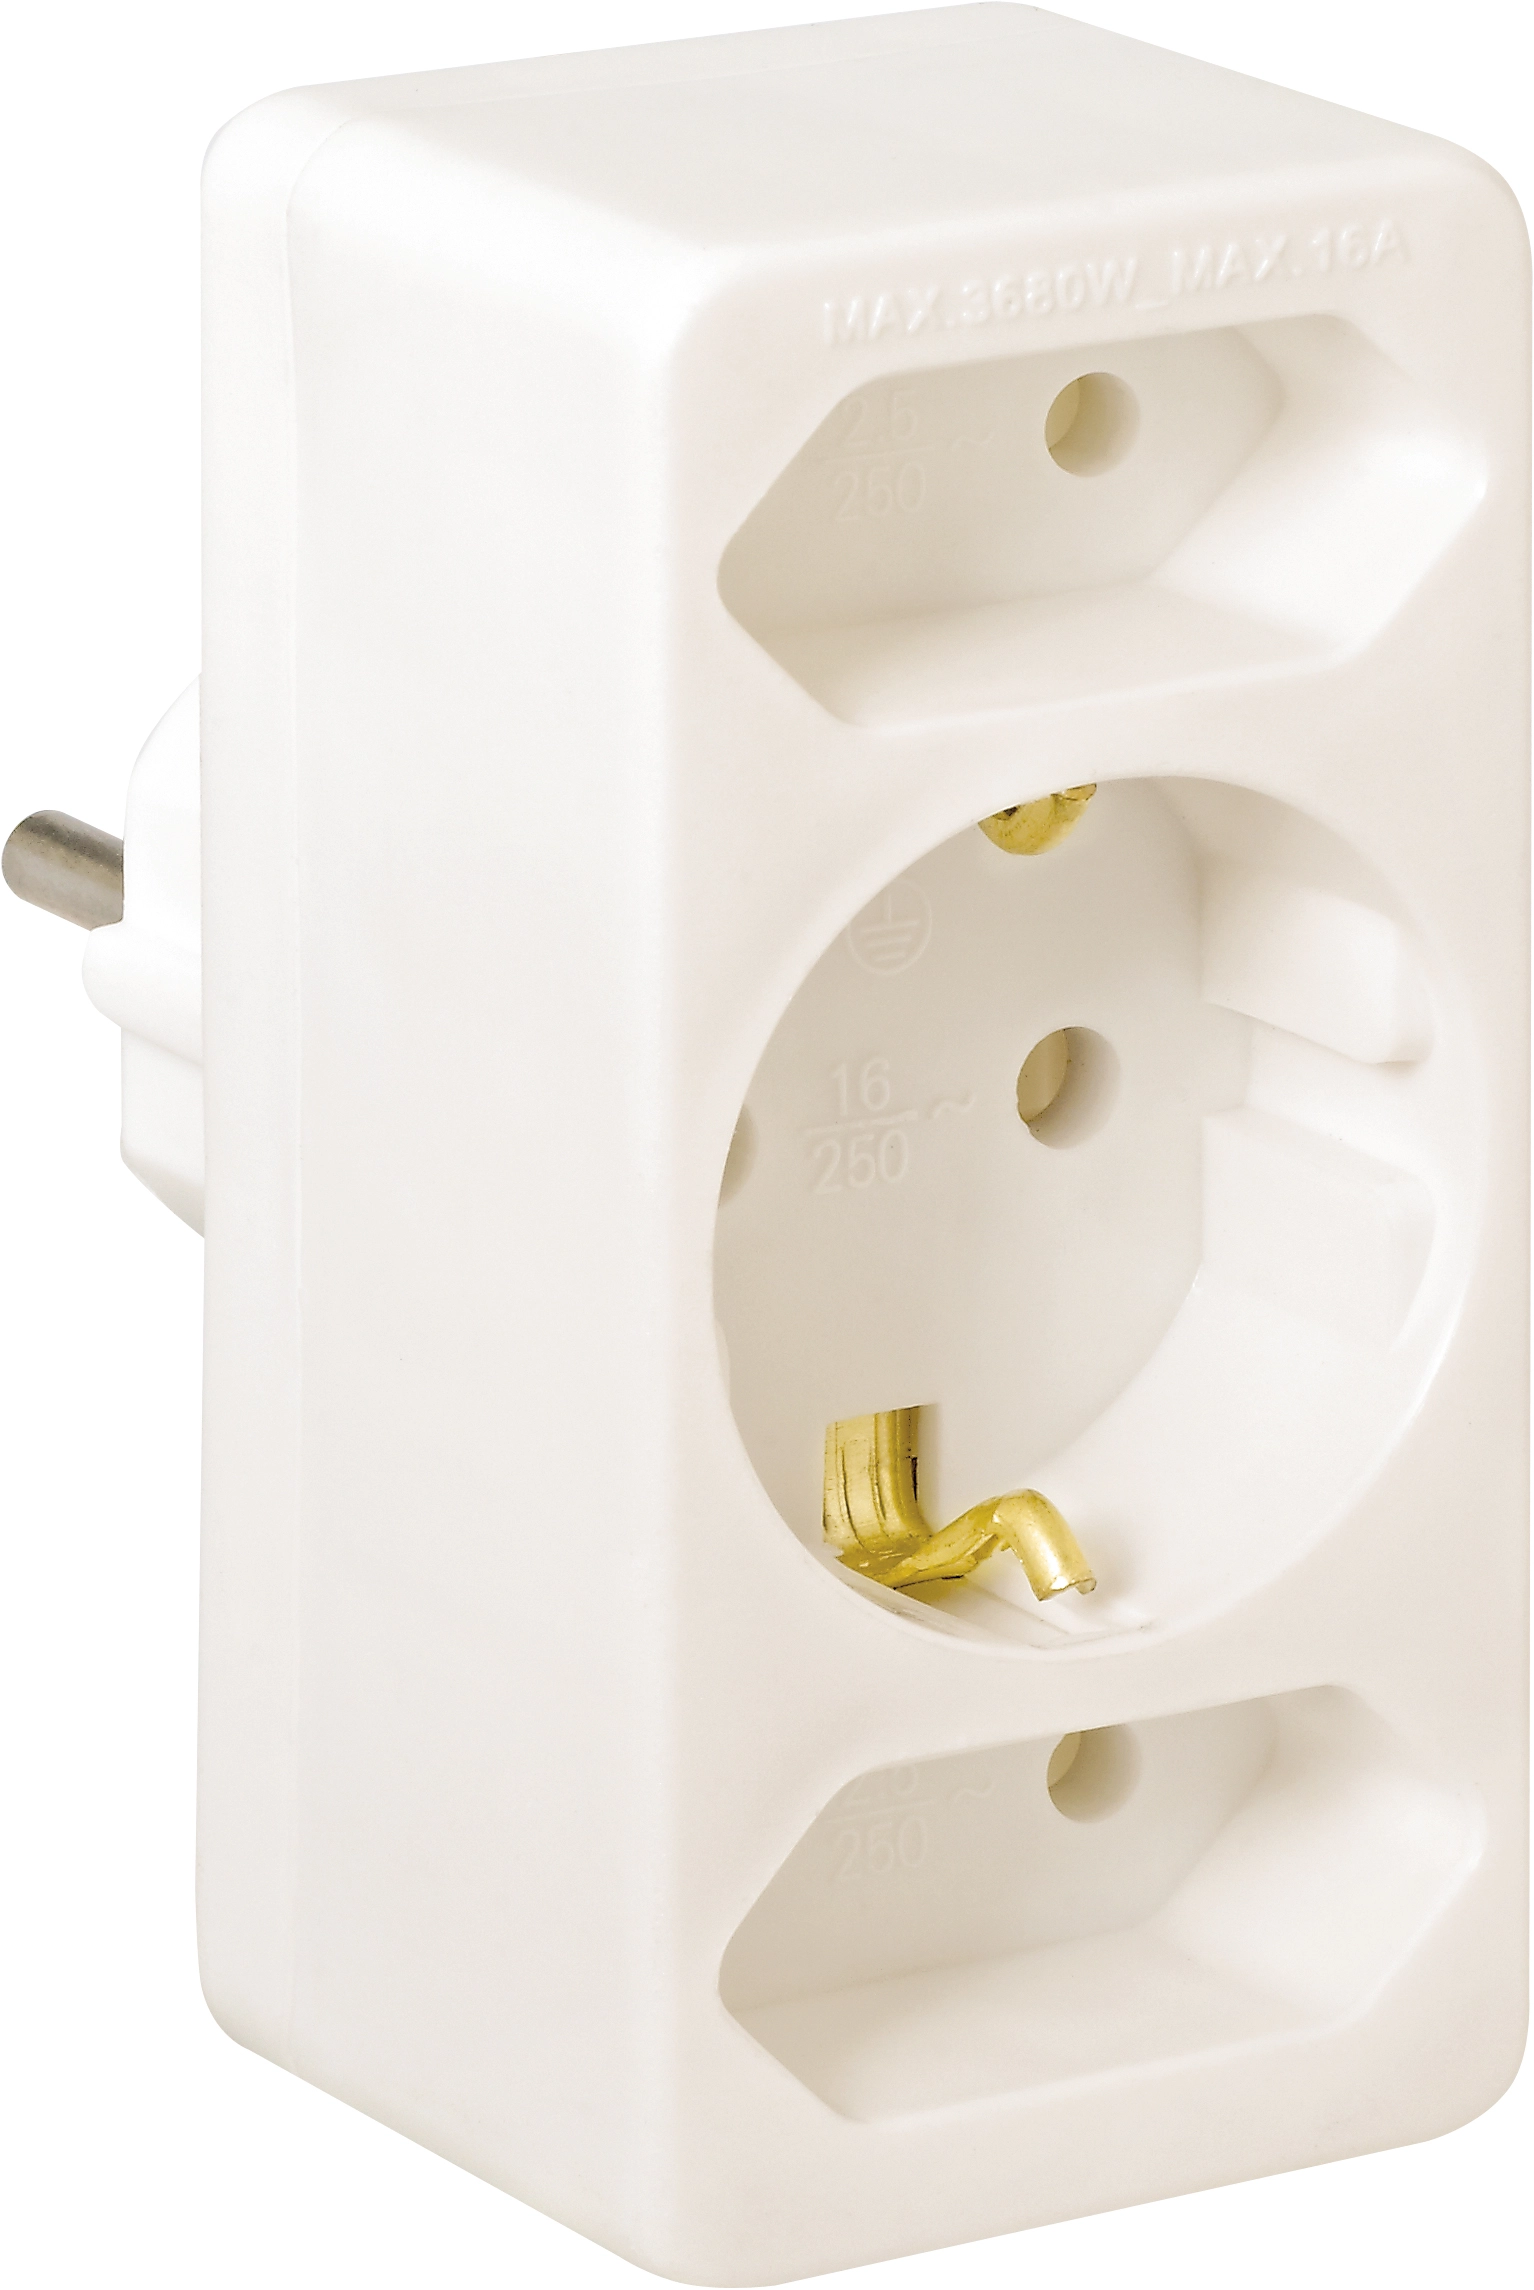 Mehrfachsteckdosen-Euro-Adapter Weiß kaufen bei OBI